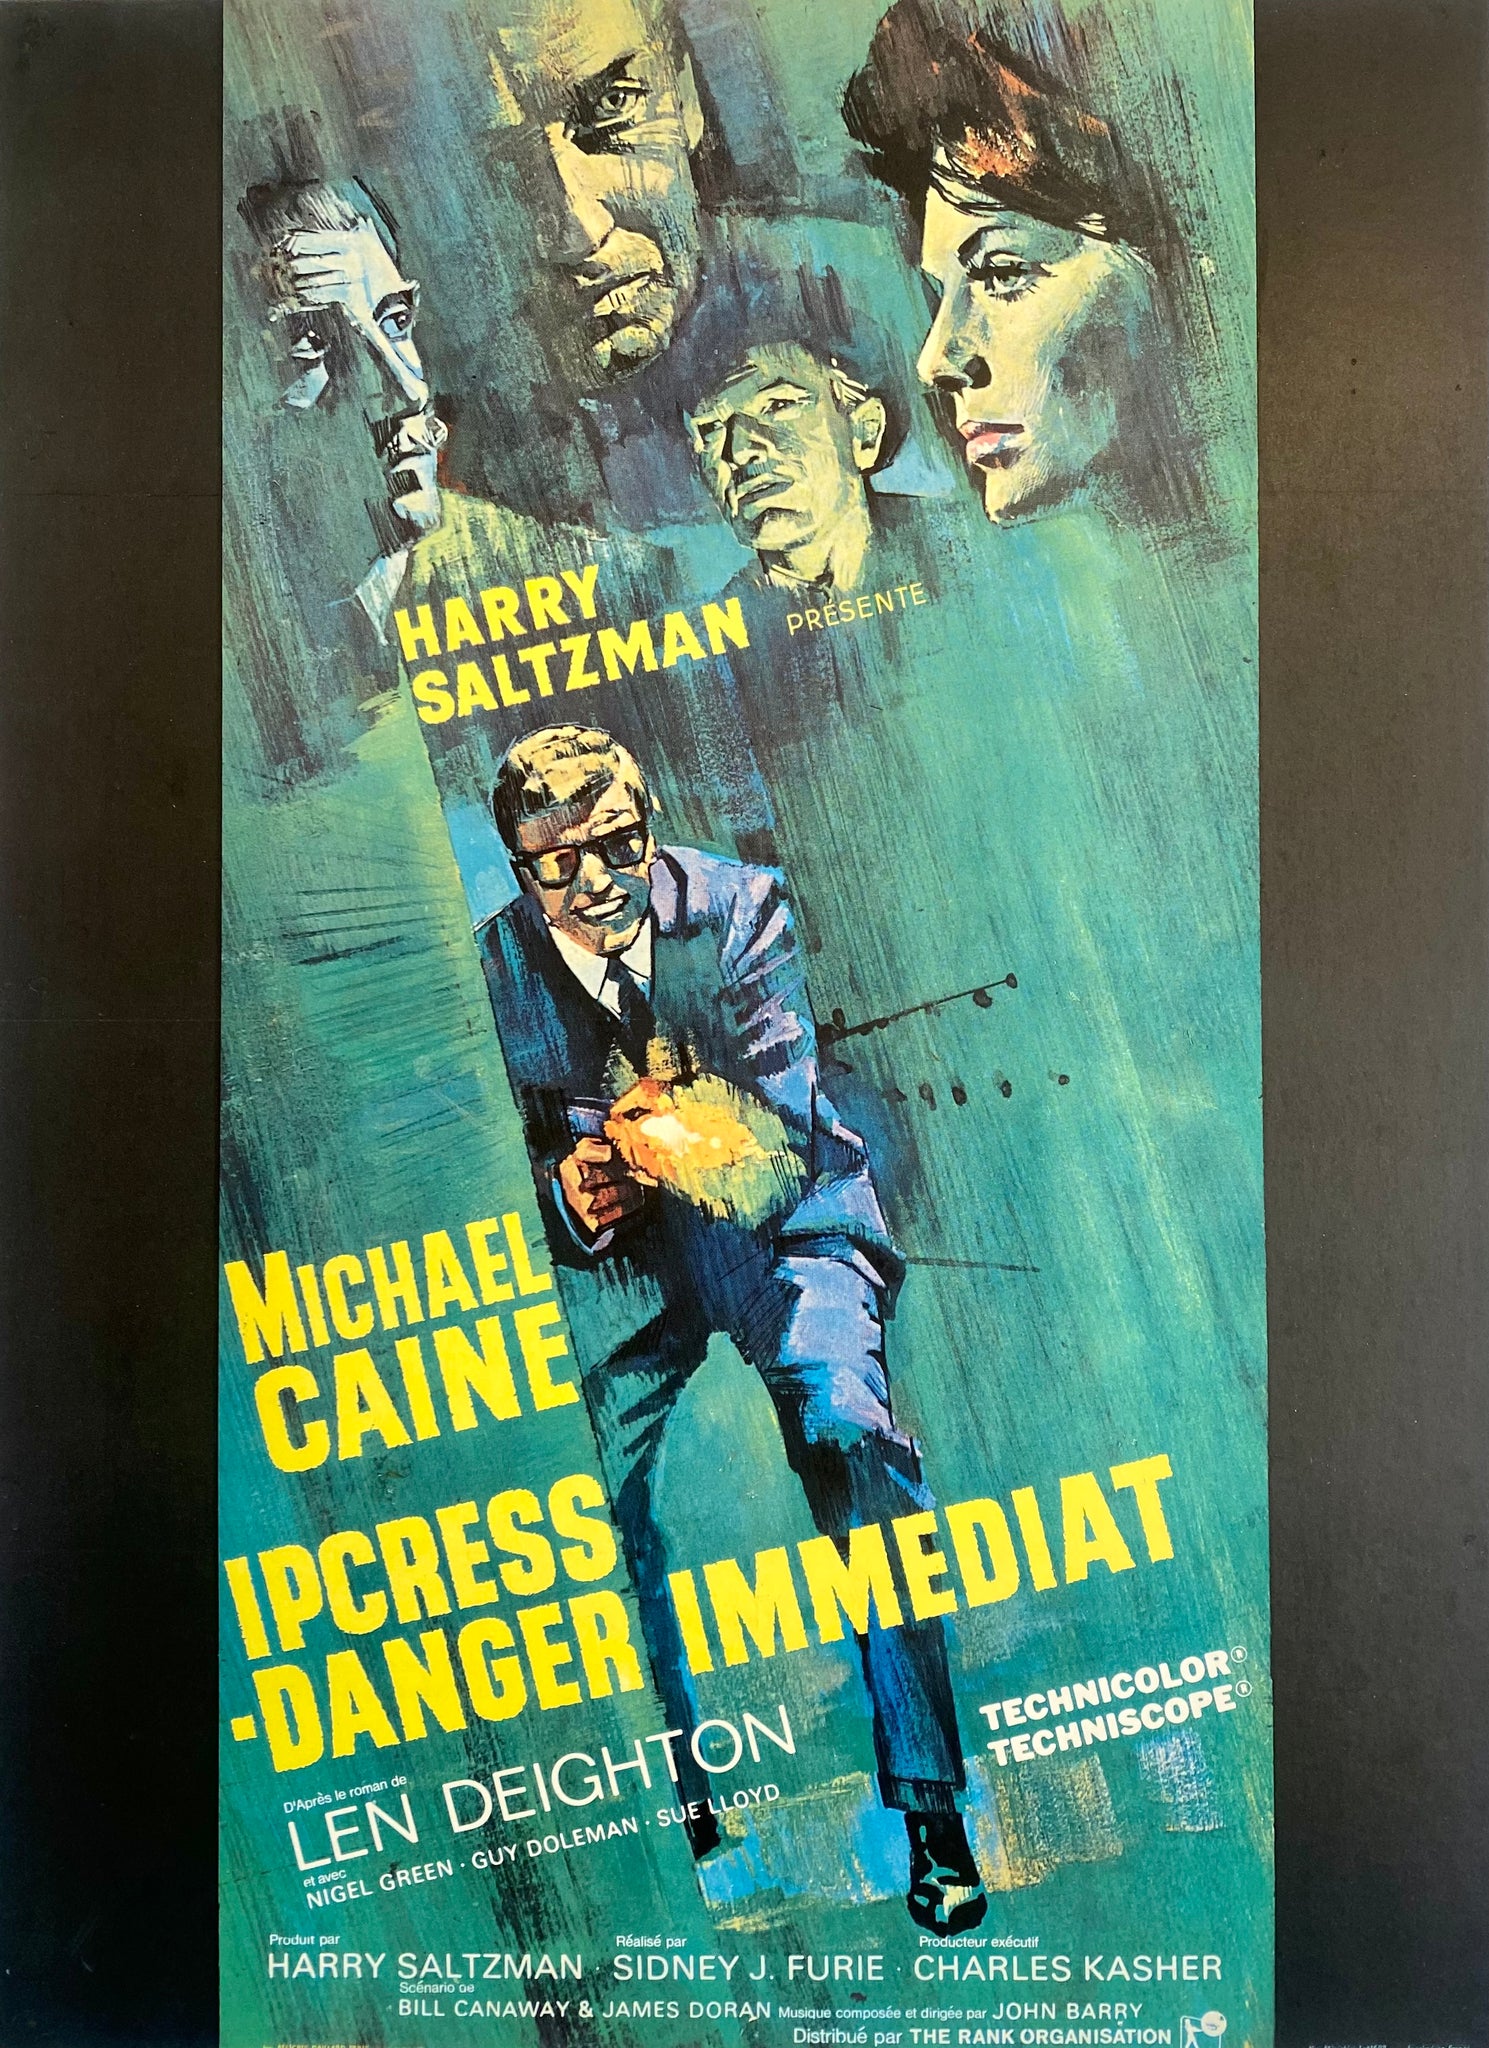 Affiche Cinéma Ipcress Danger Immédiat de 1965. 